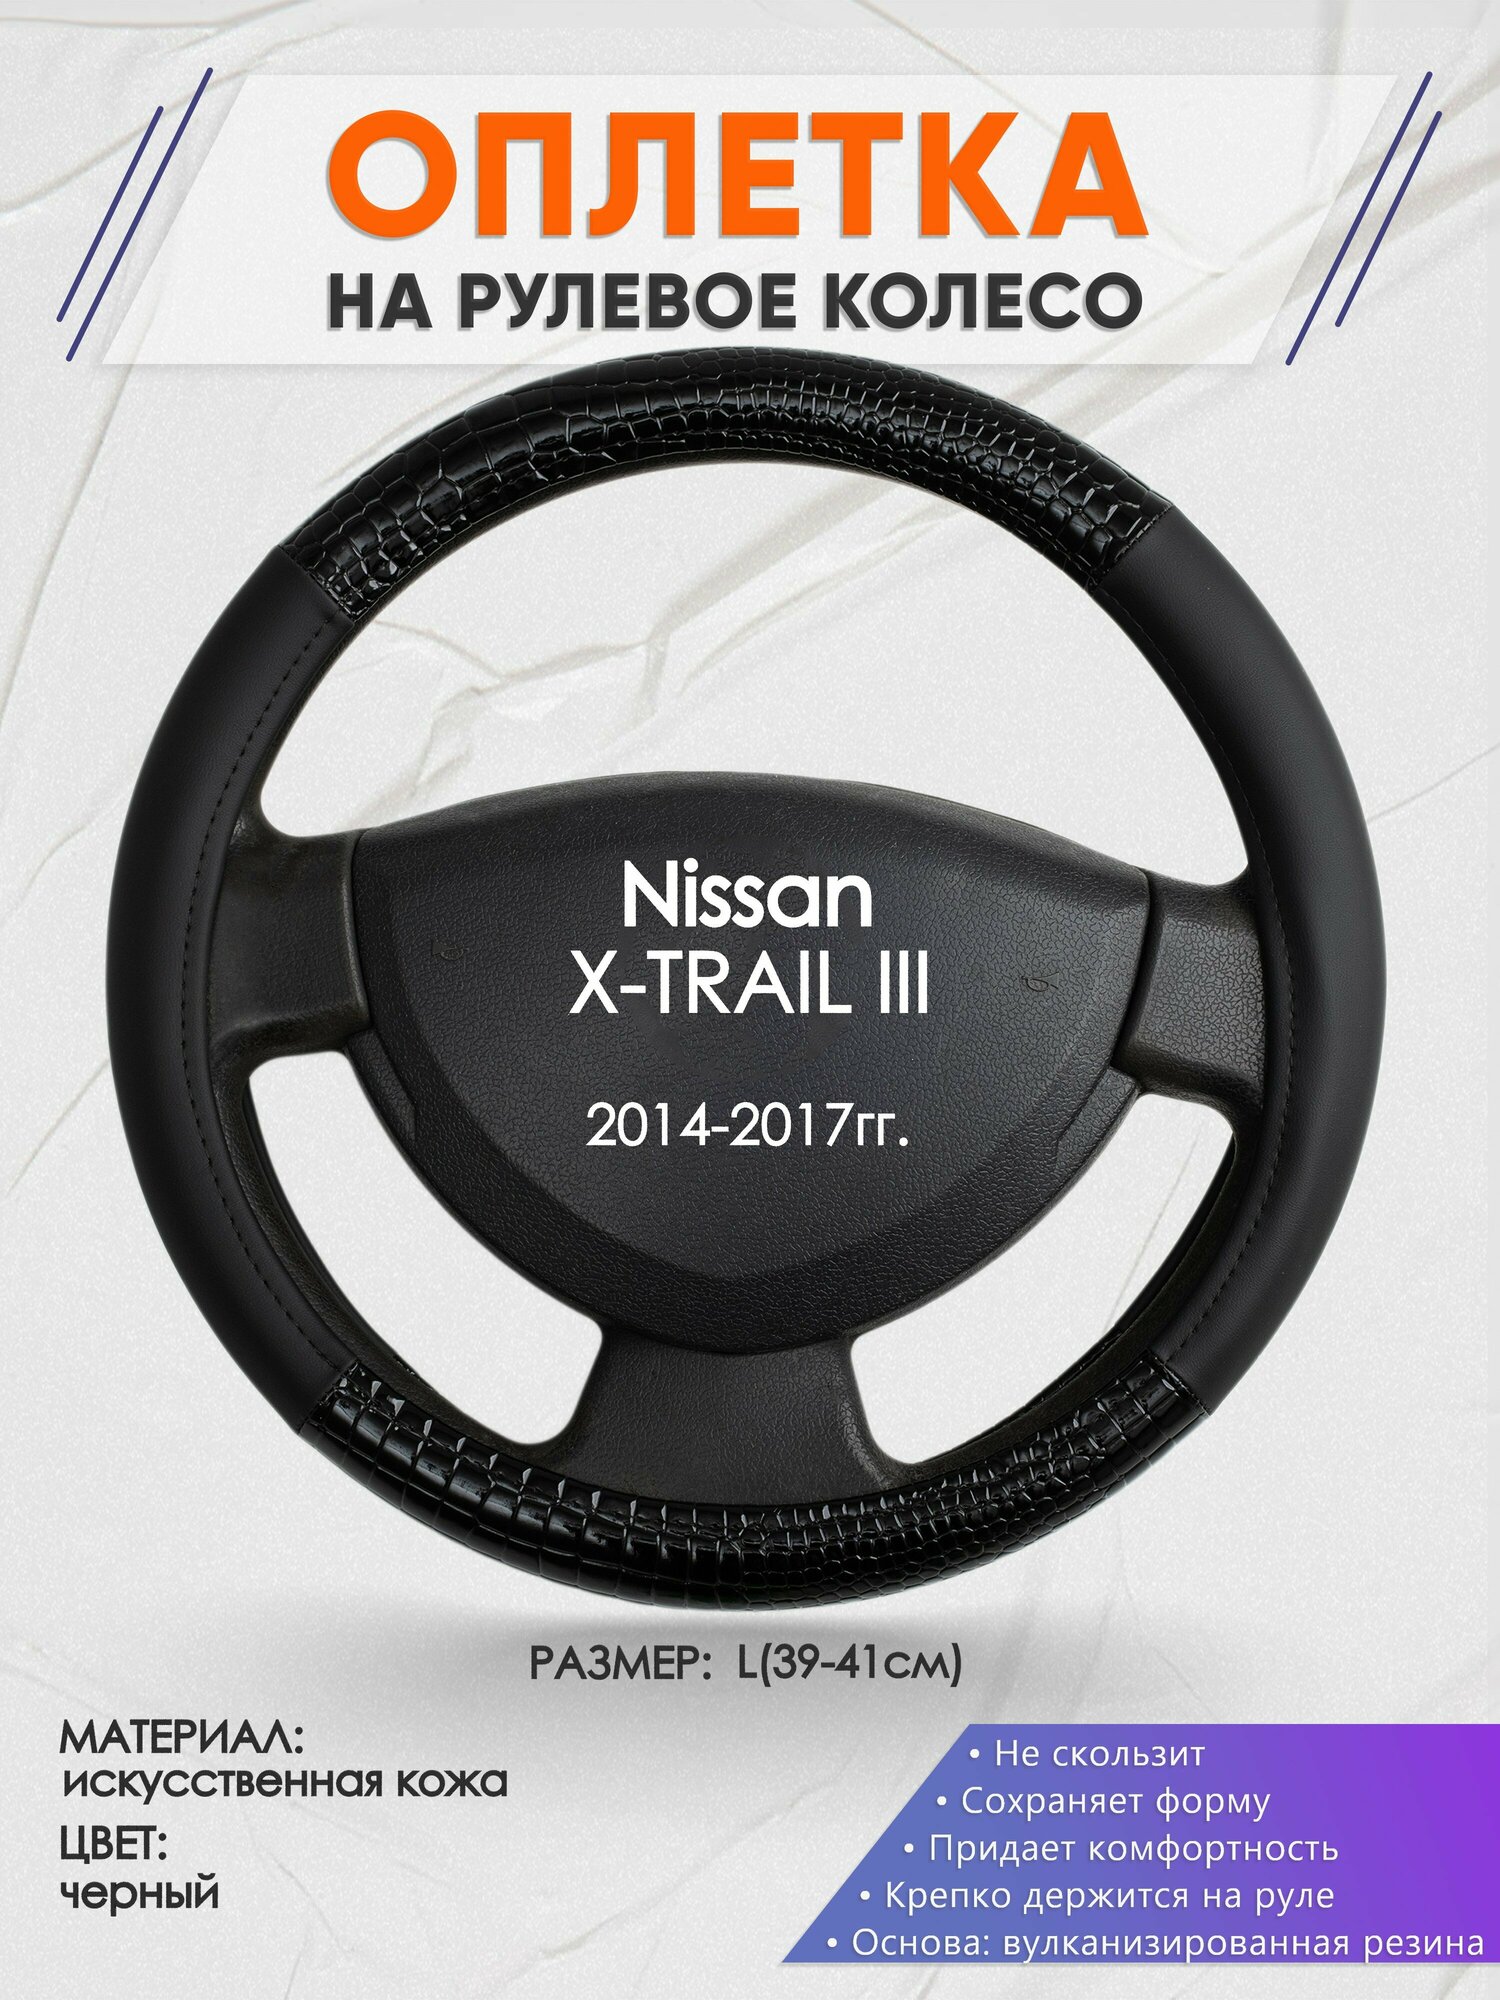 Оплетка на руль для Nissan X-TRAIL 3(Ниссан Икс Трейл) 2014-2017, L(39-41см), Искусственная кожа 83